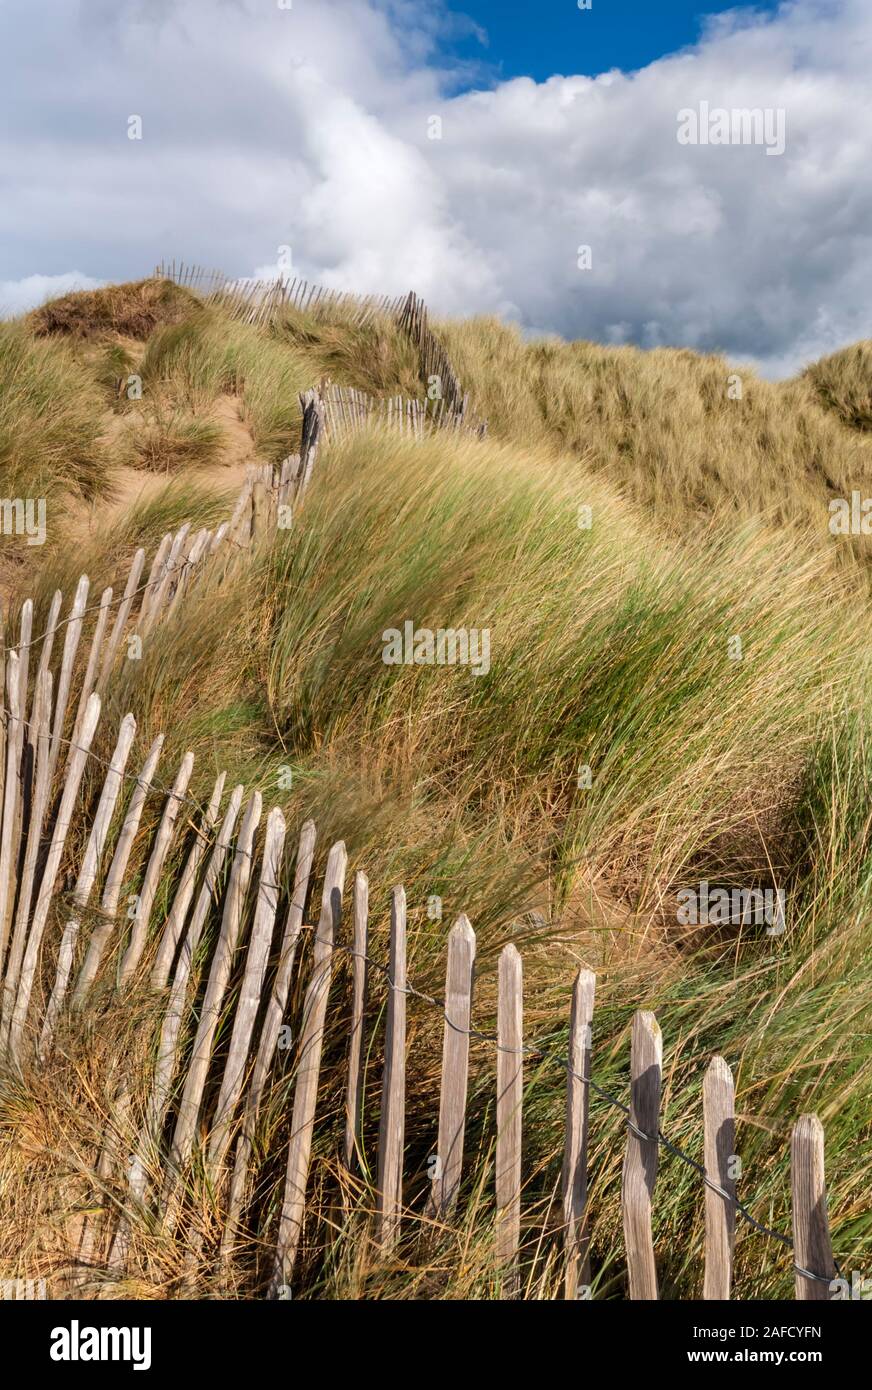 Northam Burrows Country Park, dune di sabbia e erbe di marram con recinzioni, North Devon, South West, UK Foto Stock